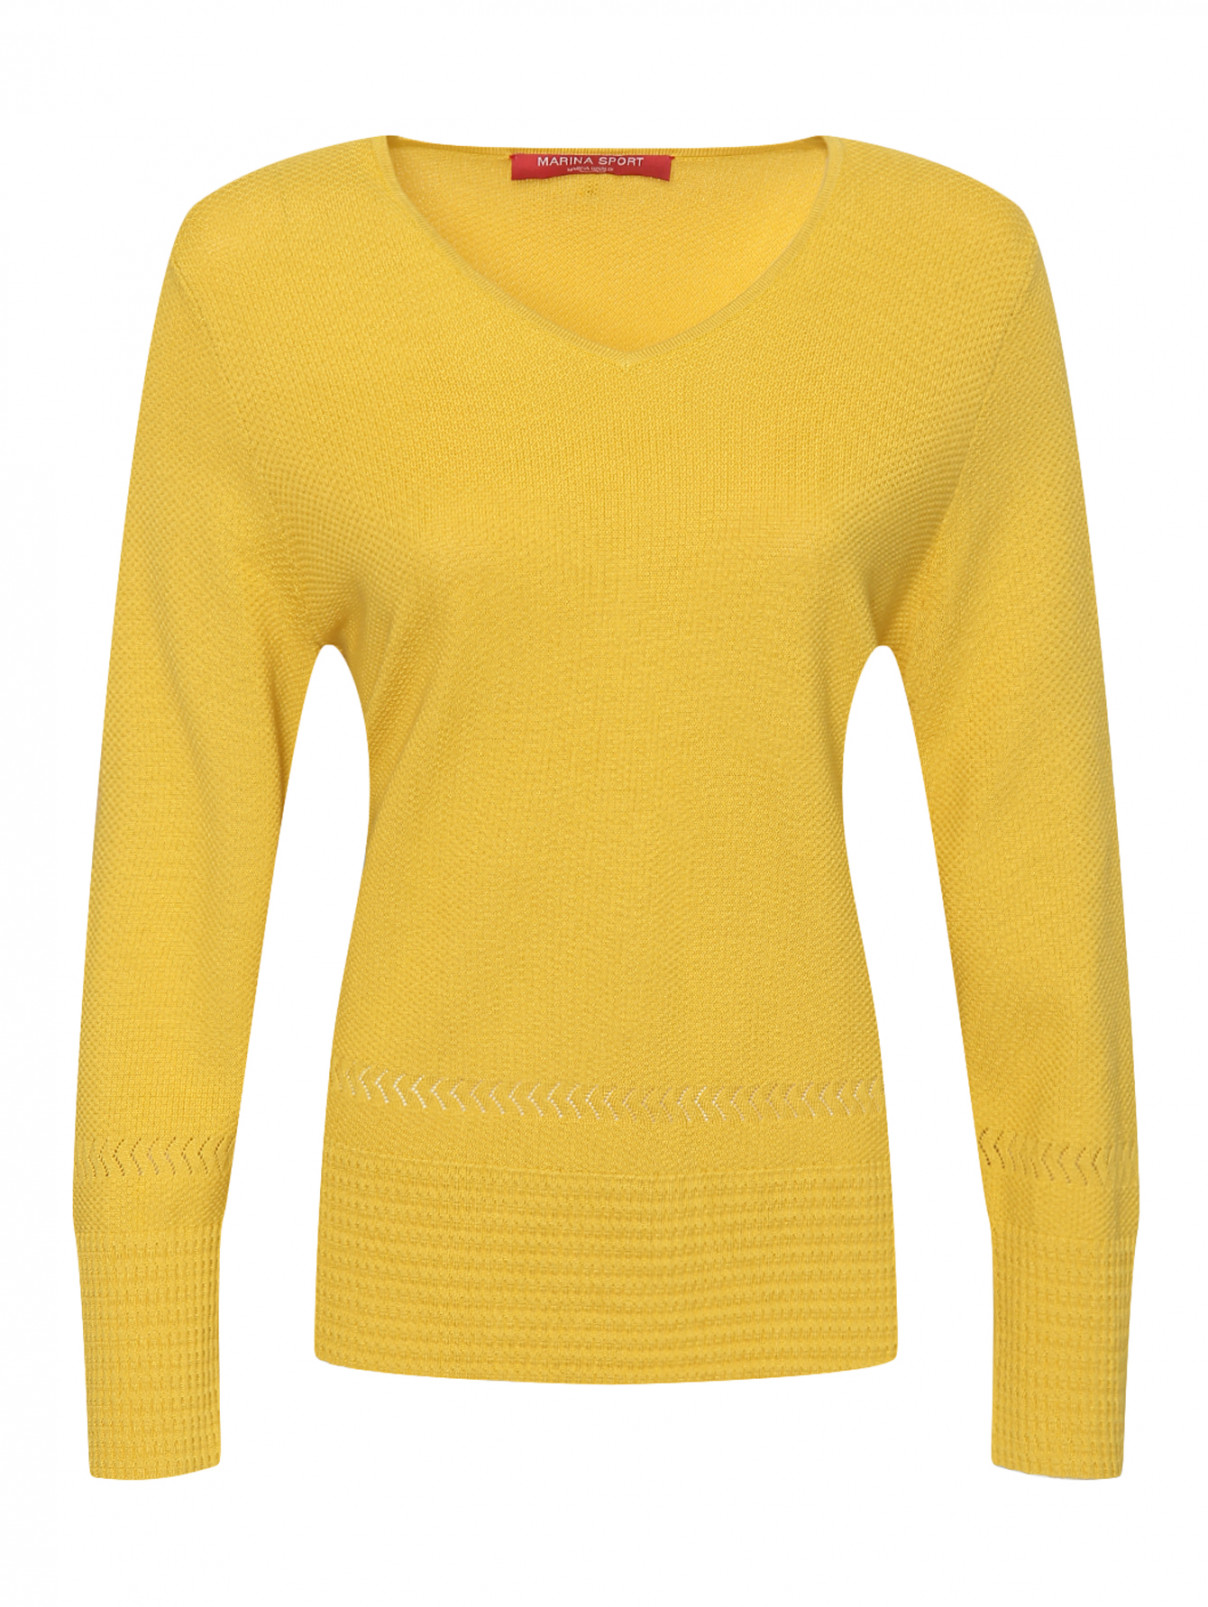 Джемпер из хлопка Marina Rinaldi  –  Общий вид  – Цвет:  Желтый